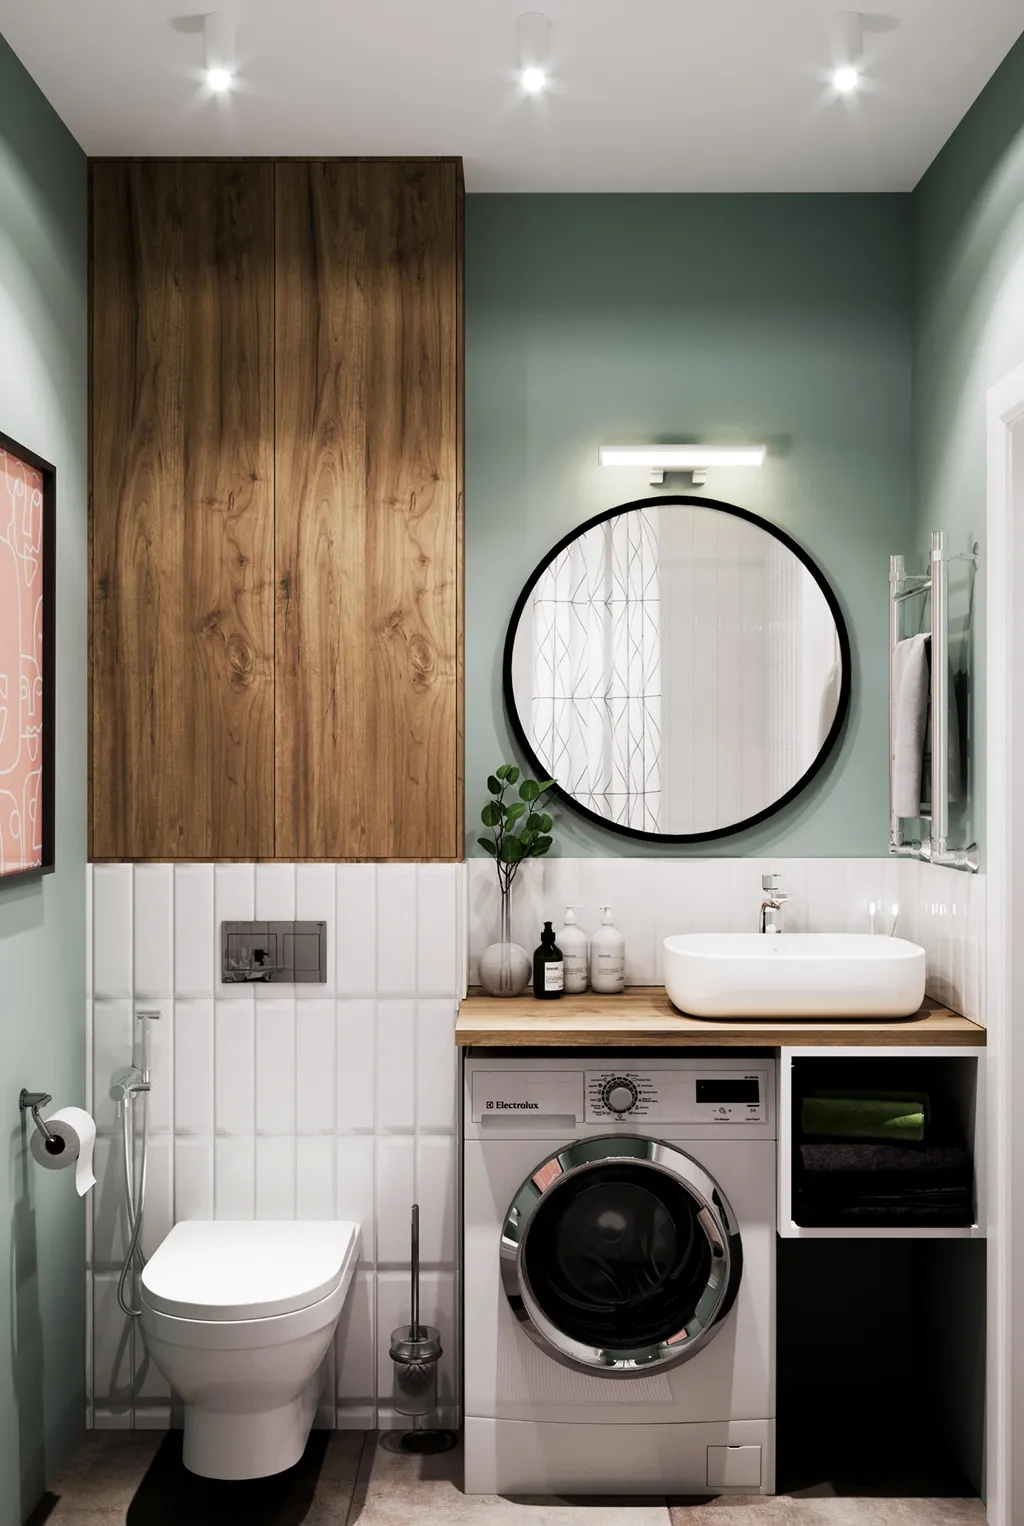 Công trình hoàn thiện nội thất phòng tắm cho căn hộ theo phong cách Scandinavian & Color Block. Thi công hoàn thiện bởi TD INTERIOR.